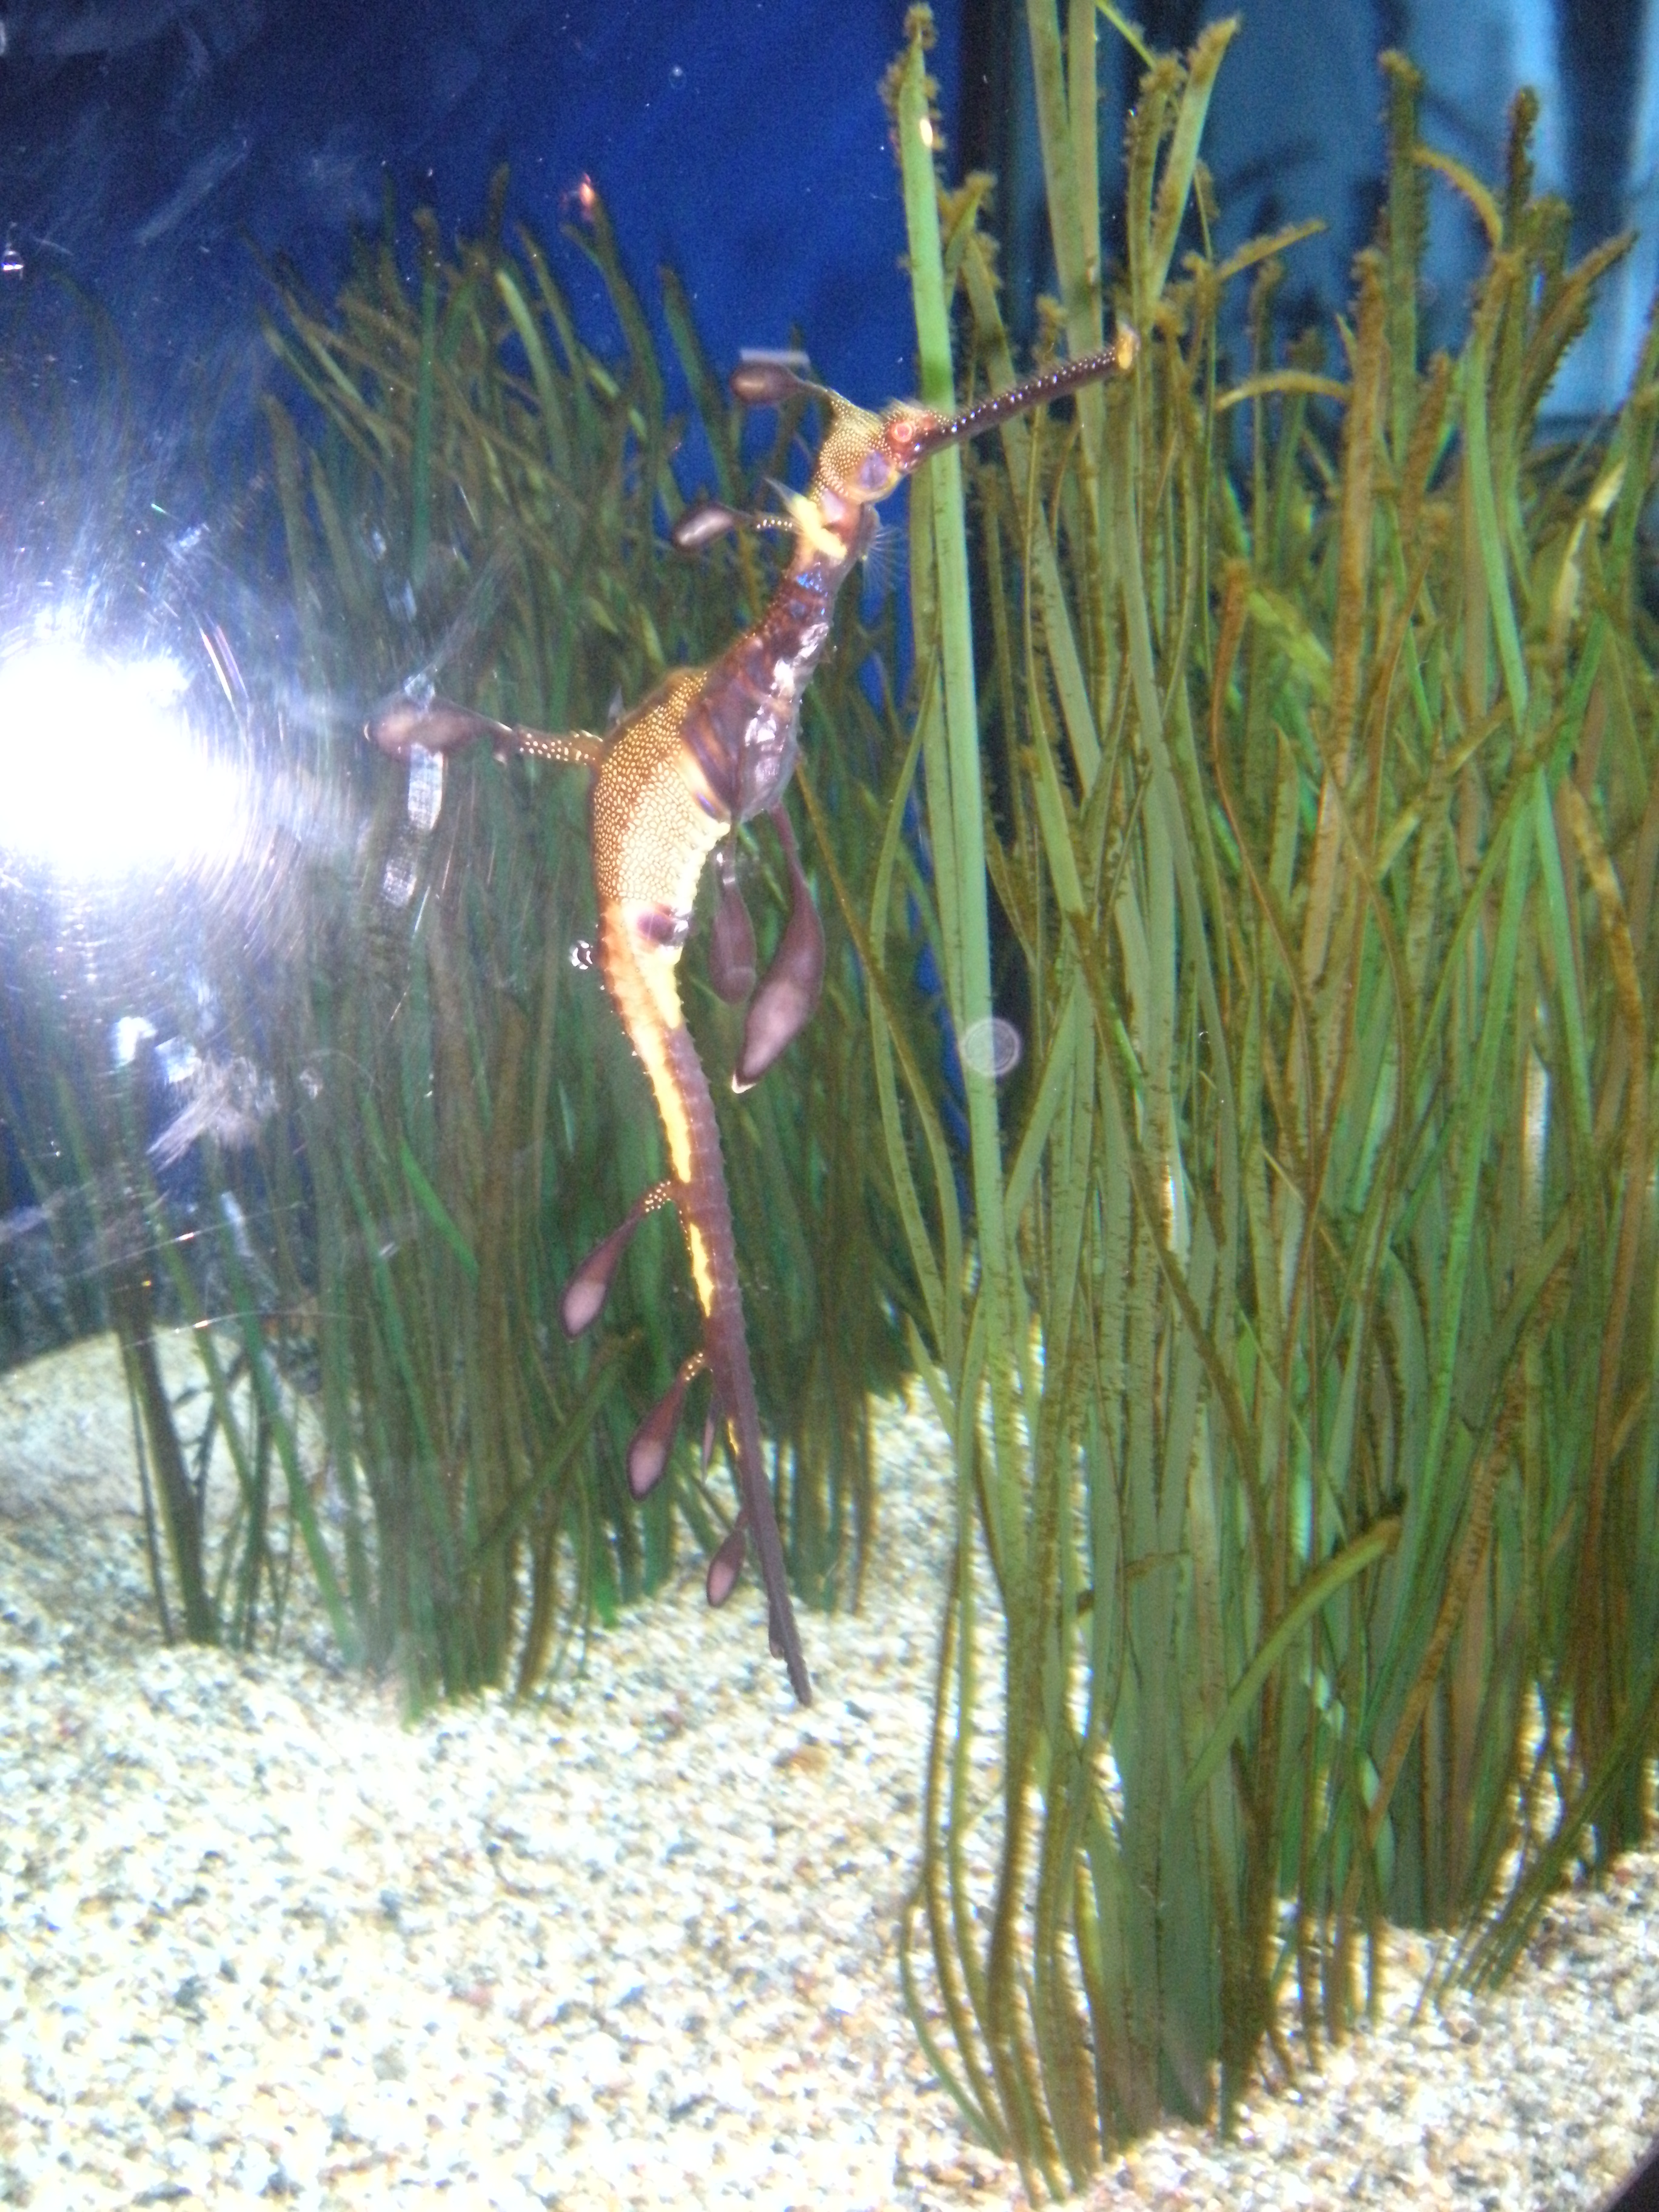 Aquarium trip picture